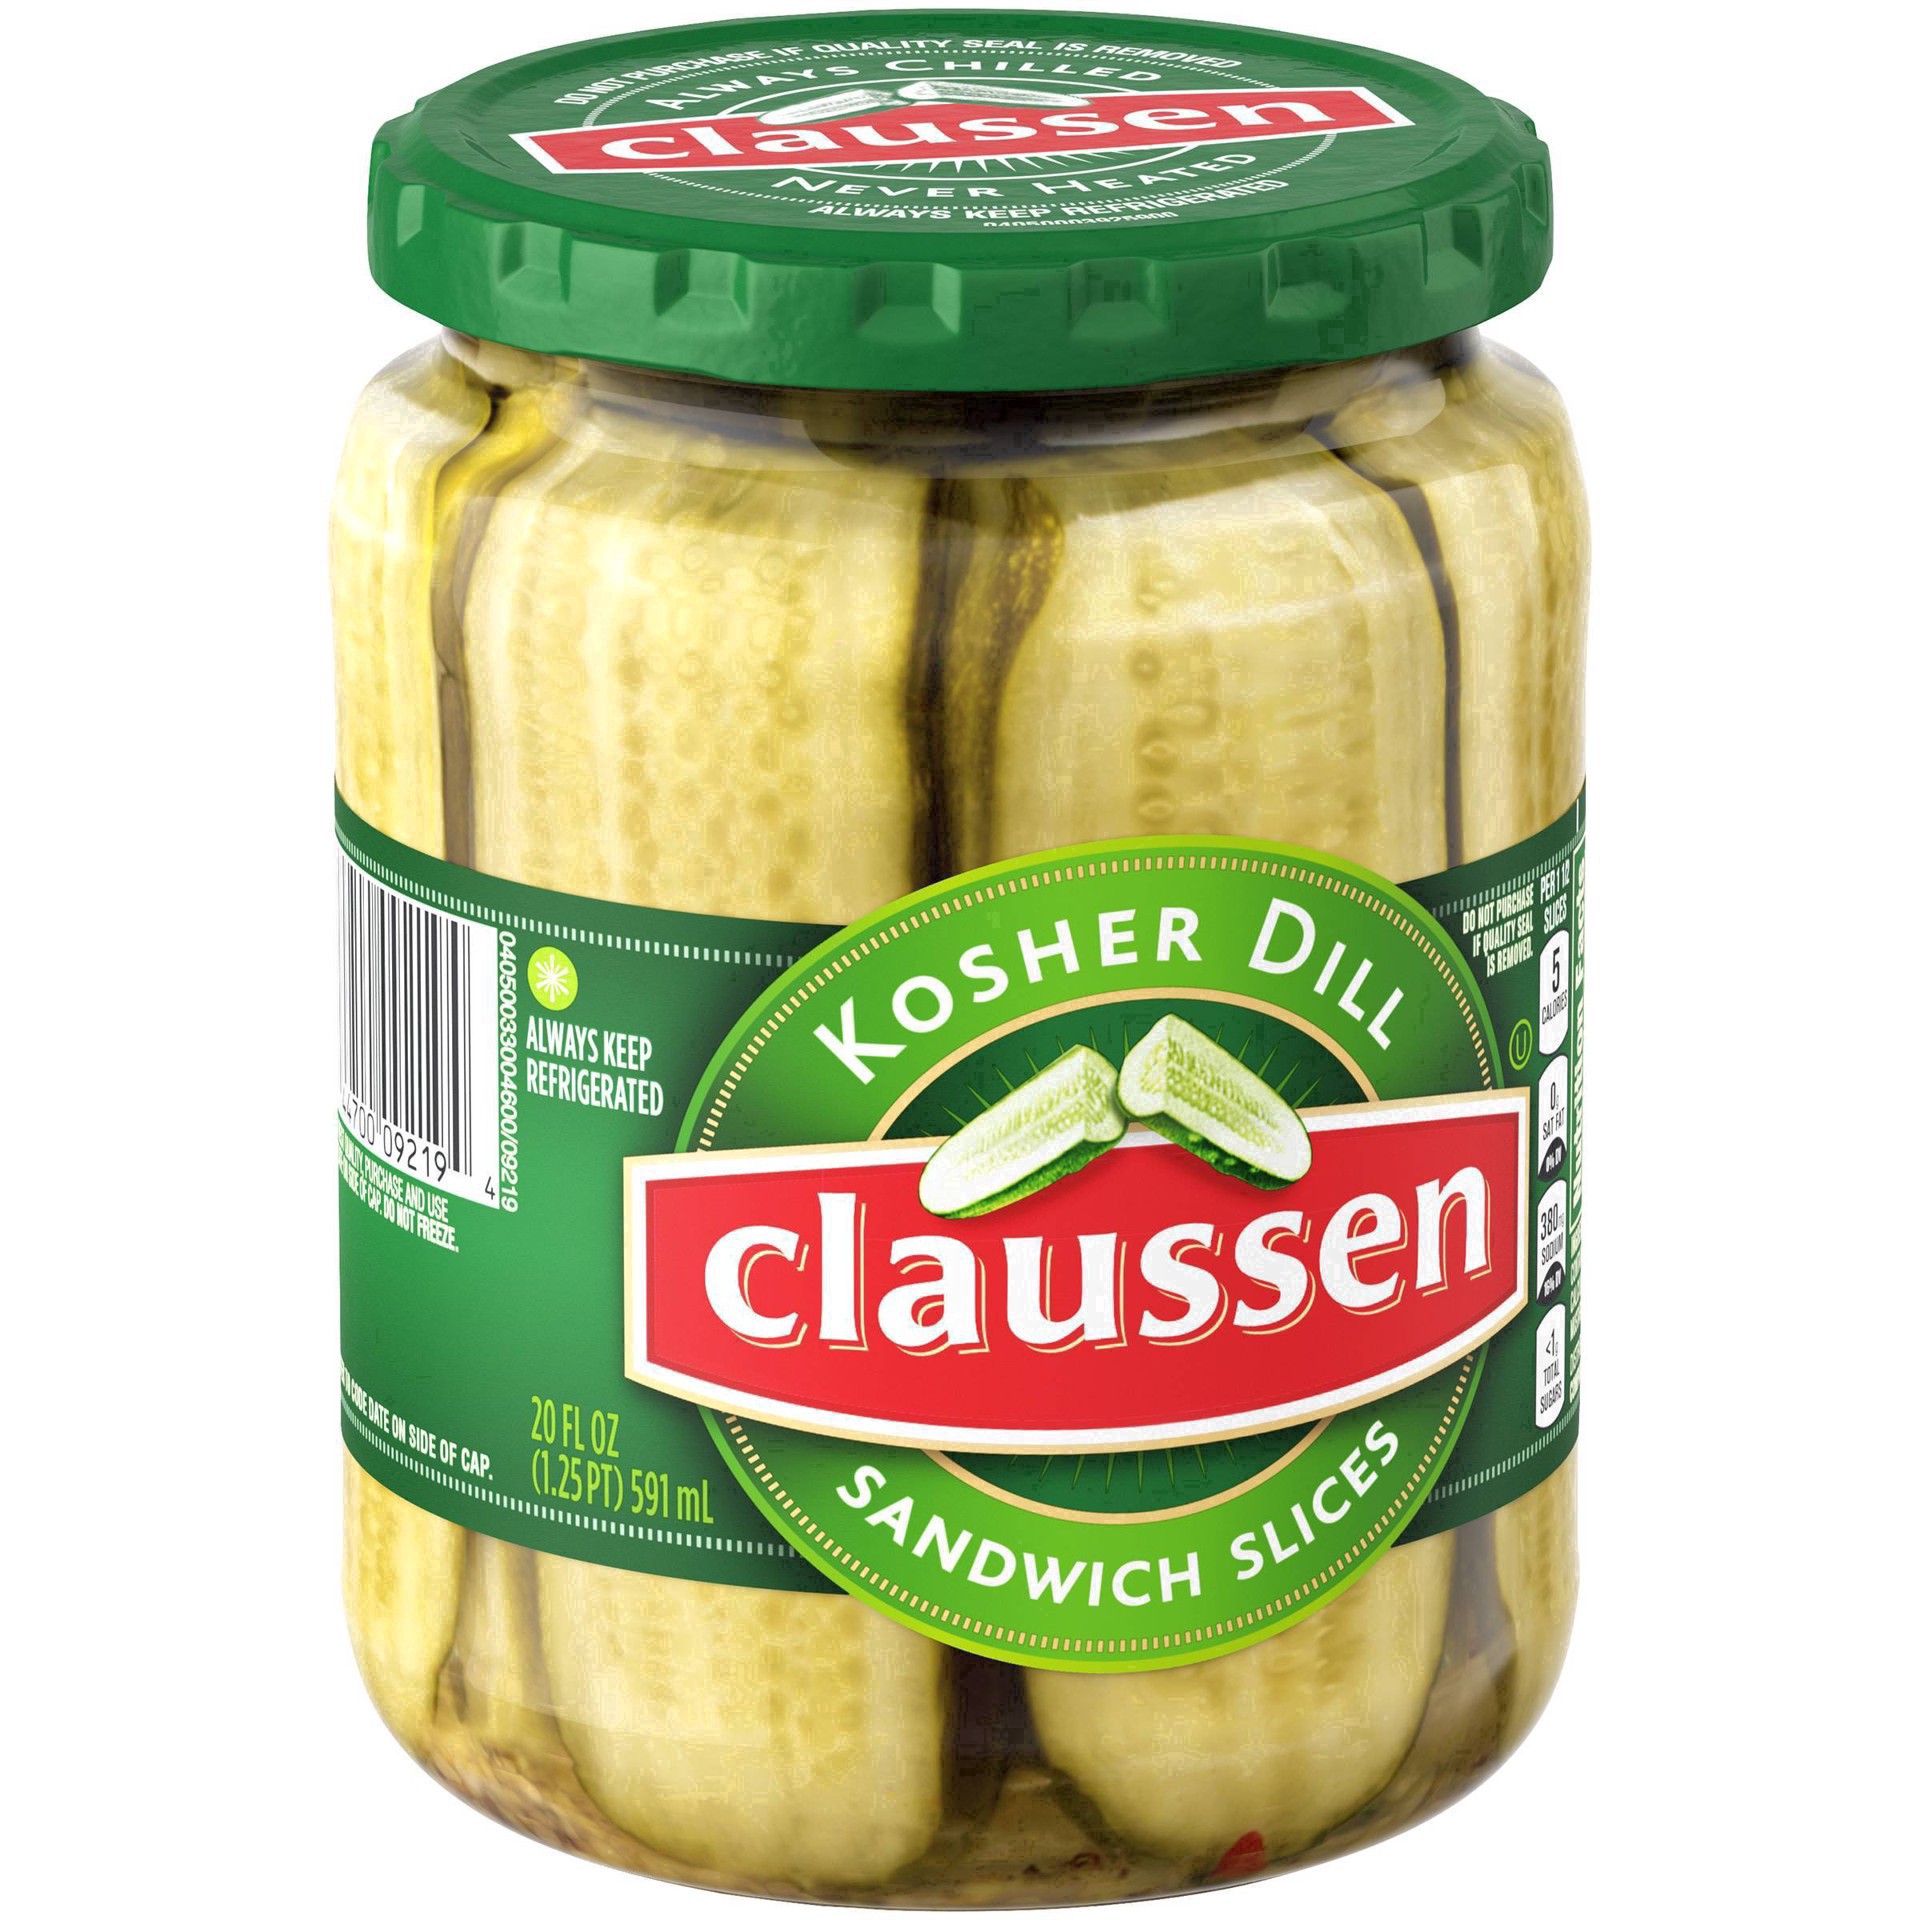 slide 25 of 144, Claussen Kosher Dill Pickle Sandwich Slices, 20 fl. oz. Jar, 20 fl oz